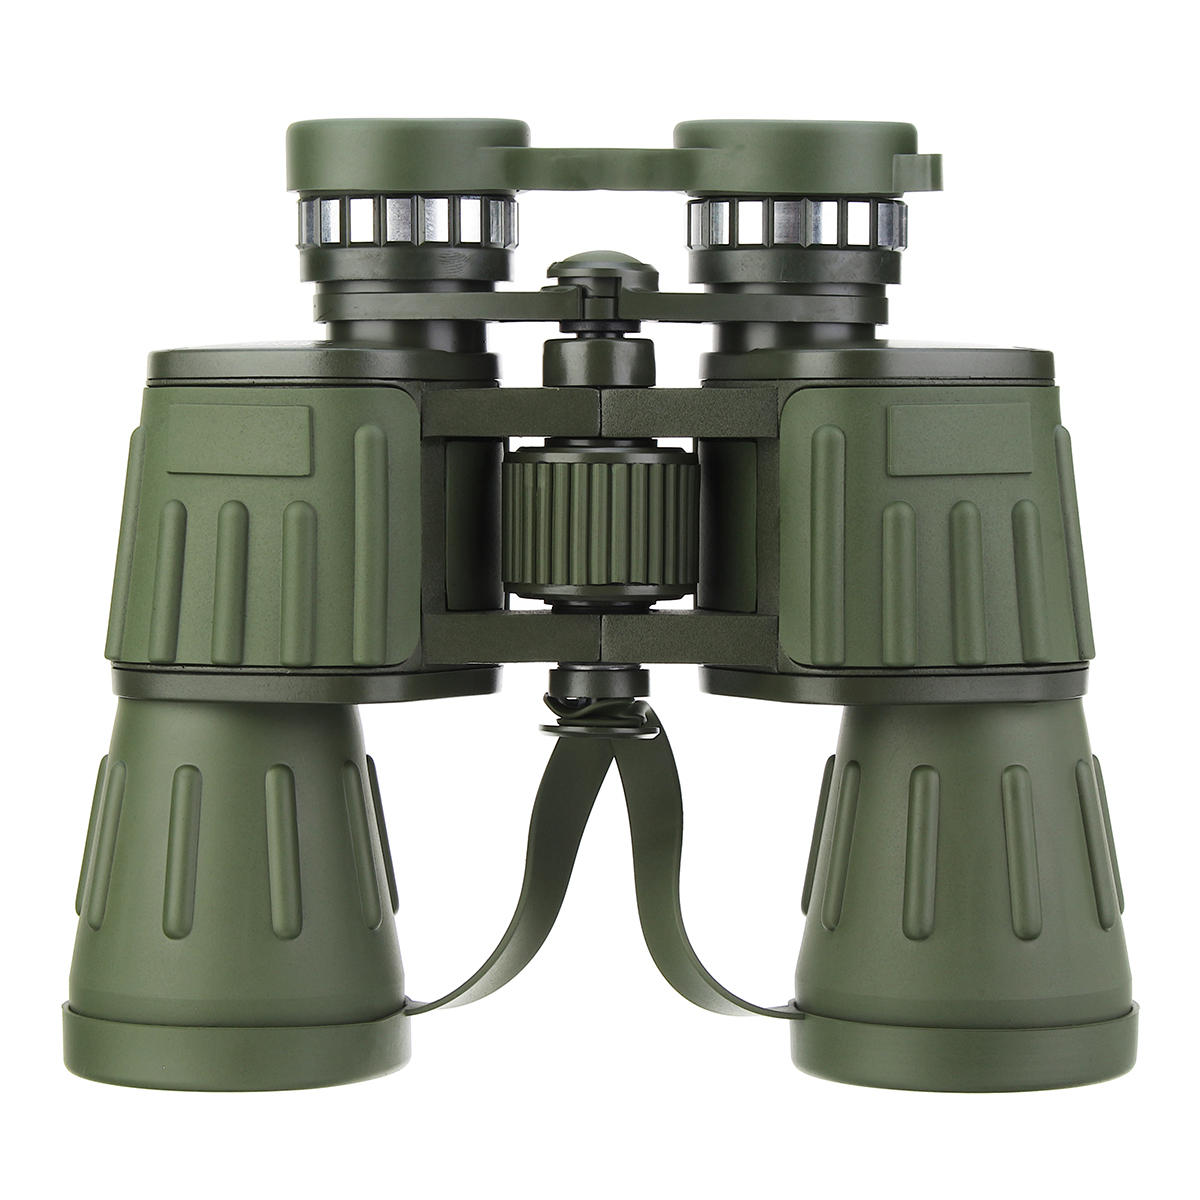 IPRee 60x50 BNV-M1 jumelles de l'armée militaire HD optique Camping télescope de chasse Vision jour / nuit